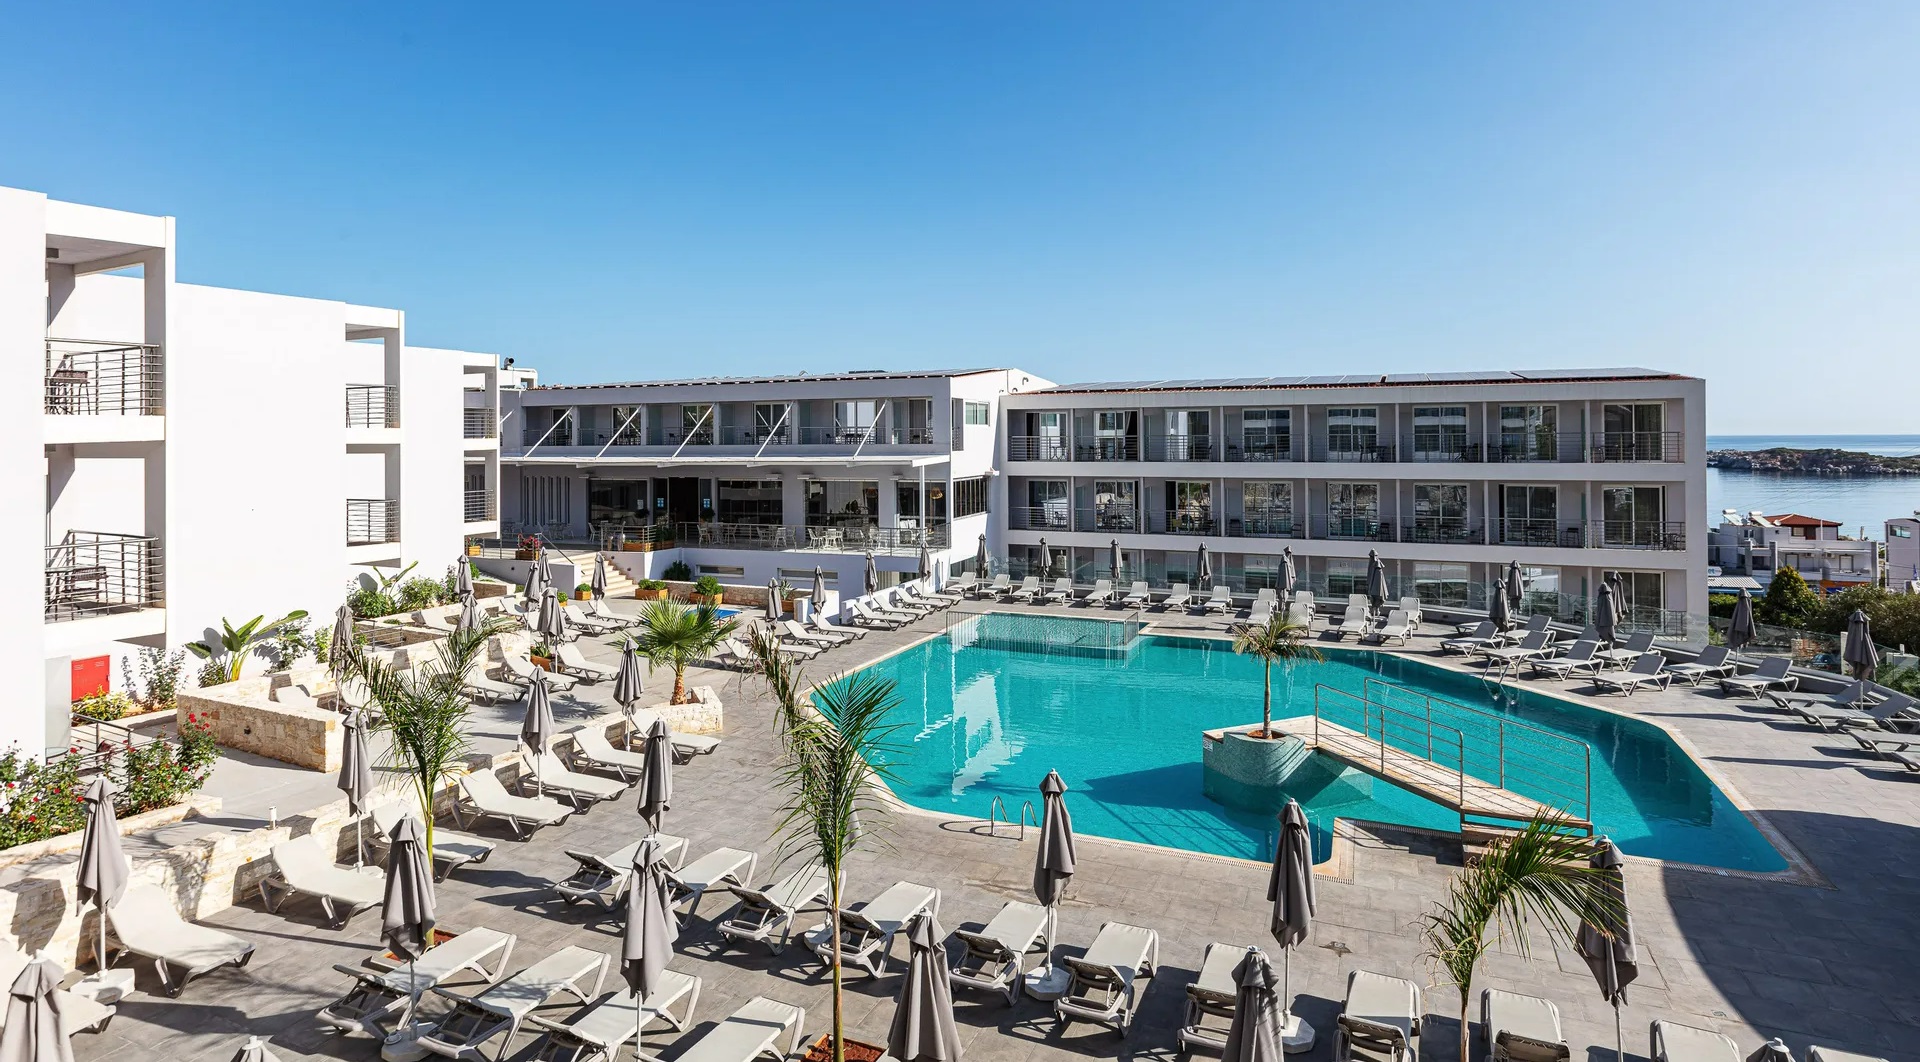 4* Atali Grand Resort - Μπαλί, Κρήτη ✦ -15% ✦ 2 Ημέρες